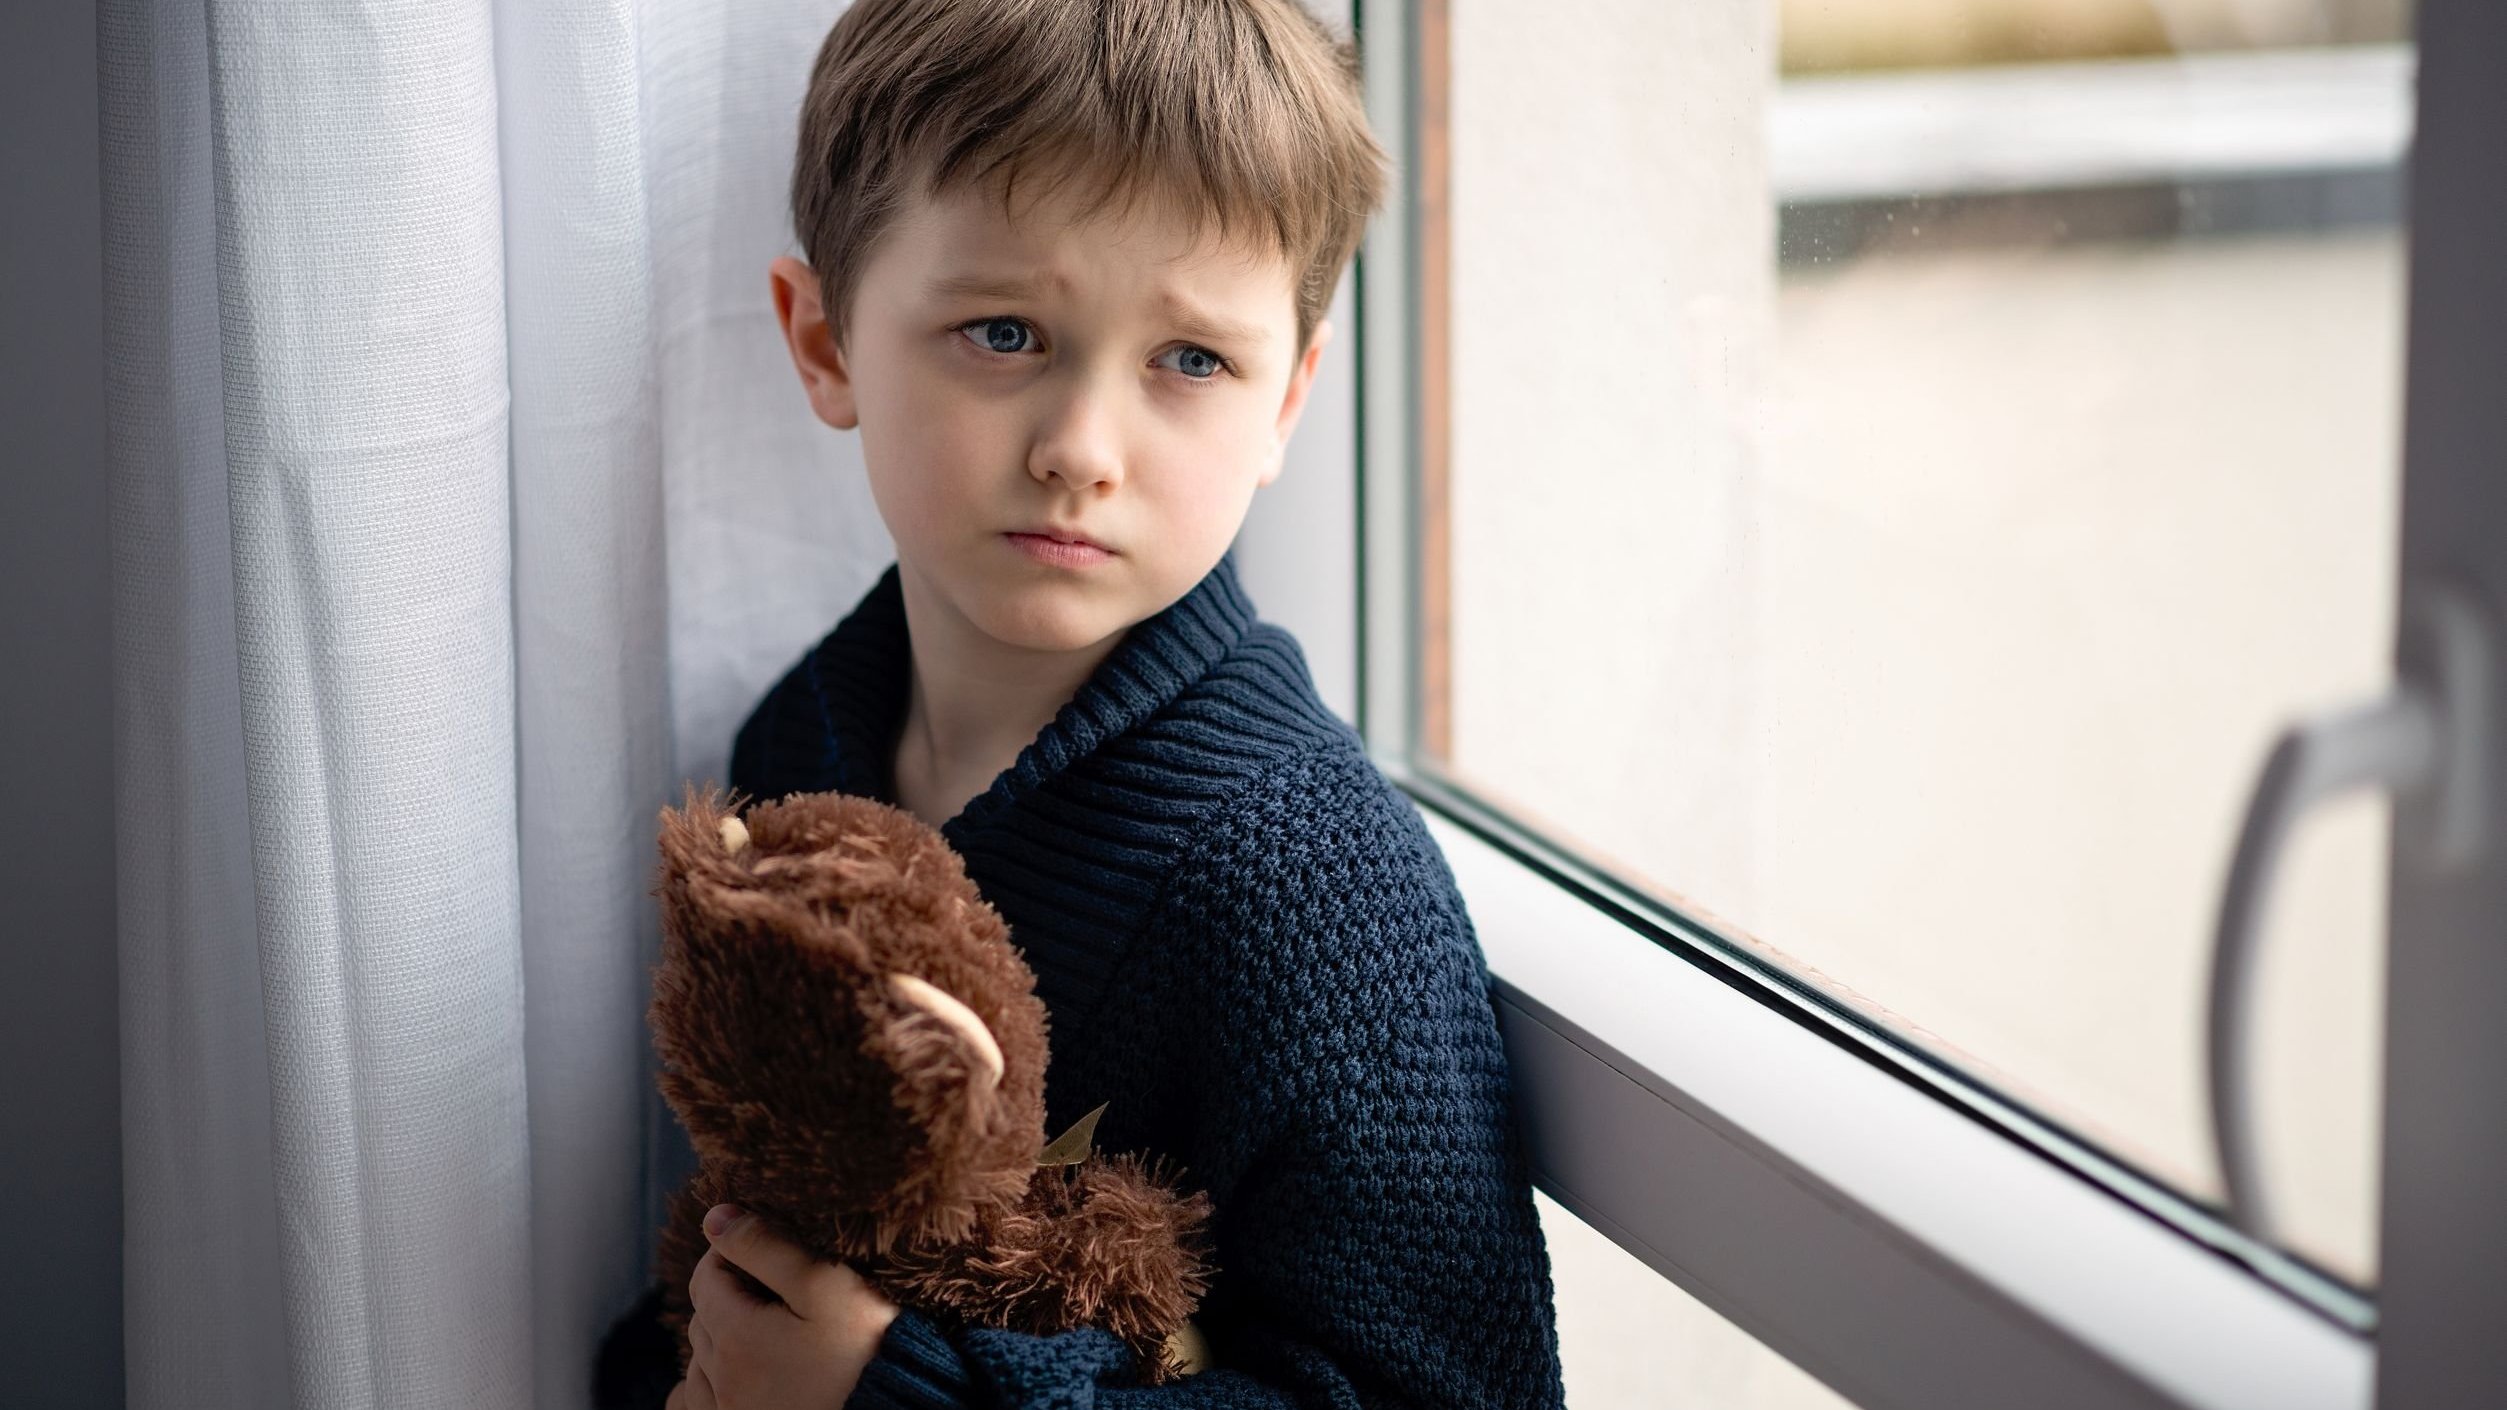 Criança triste olhando para o lado da janela, segurando ursinho de pelúcia